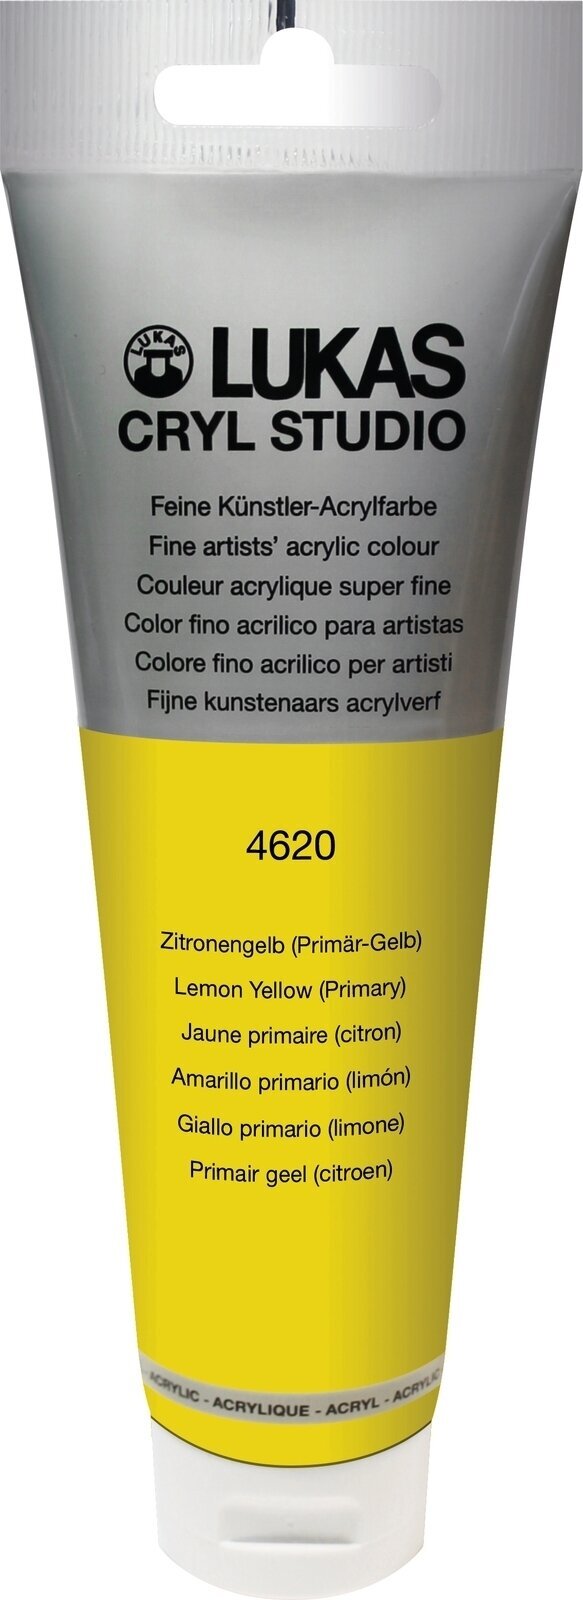 Tinta acrílica Lukas Cryl Studio Acrylic Paint Plastic Tube Tinta acrílica Lemon Yellow (Primary) 125 ml 1 un.